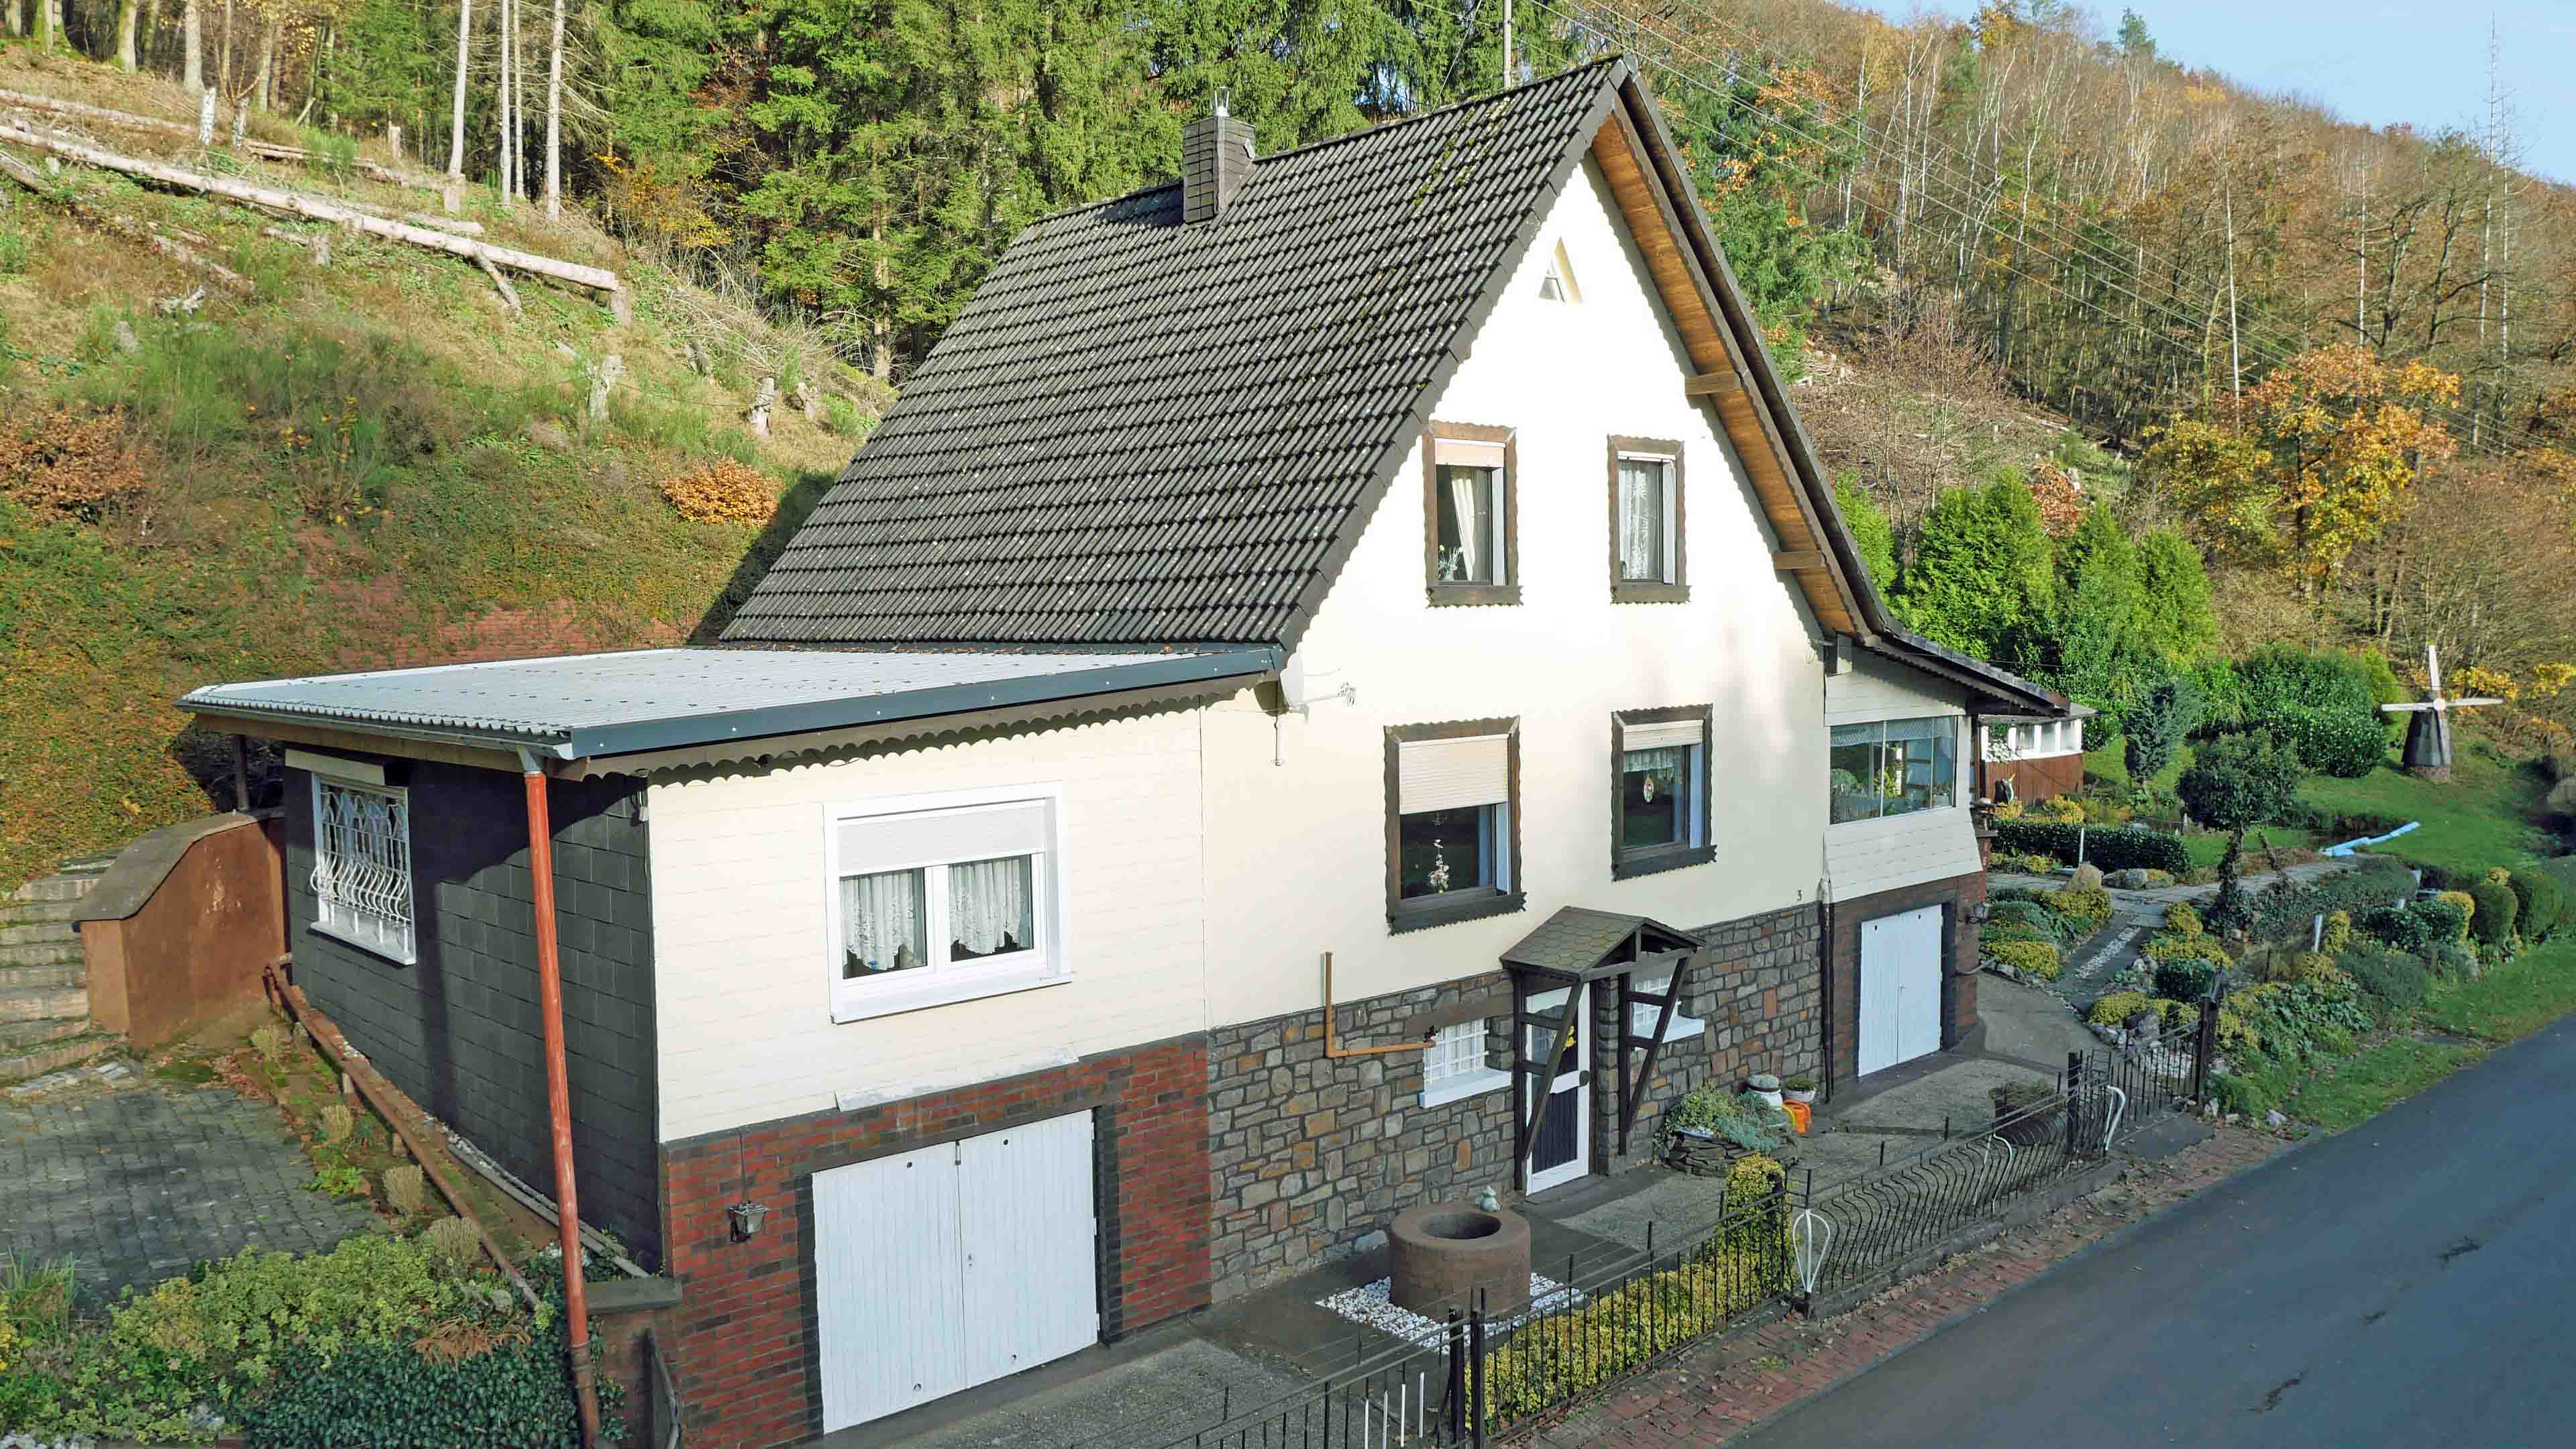 Morsbach-Niederzielenbach: Alleinlage mit angrenzendem Eichenwald, Wiese und Bachlauf, Ansicht links: Wohnhaus mit 155 m² Wohnfläche und Vollkeller